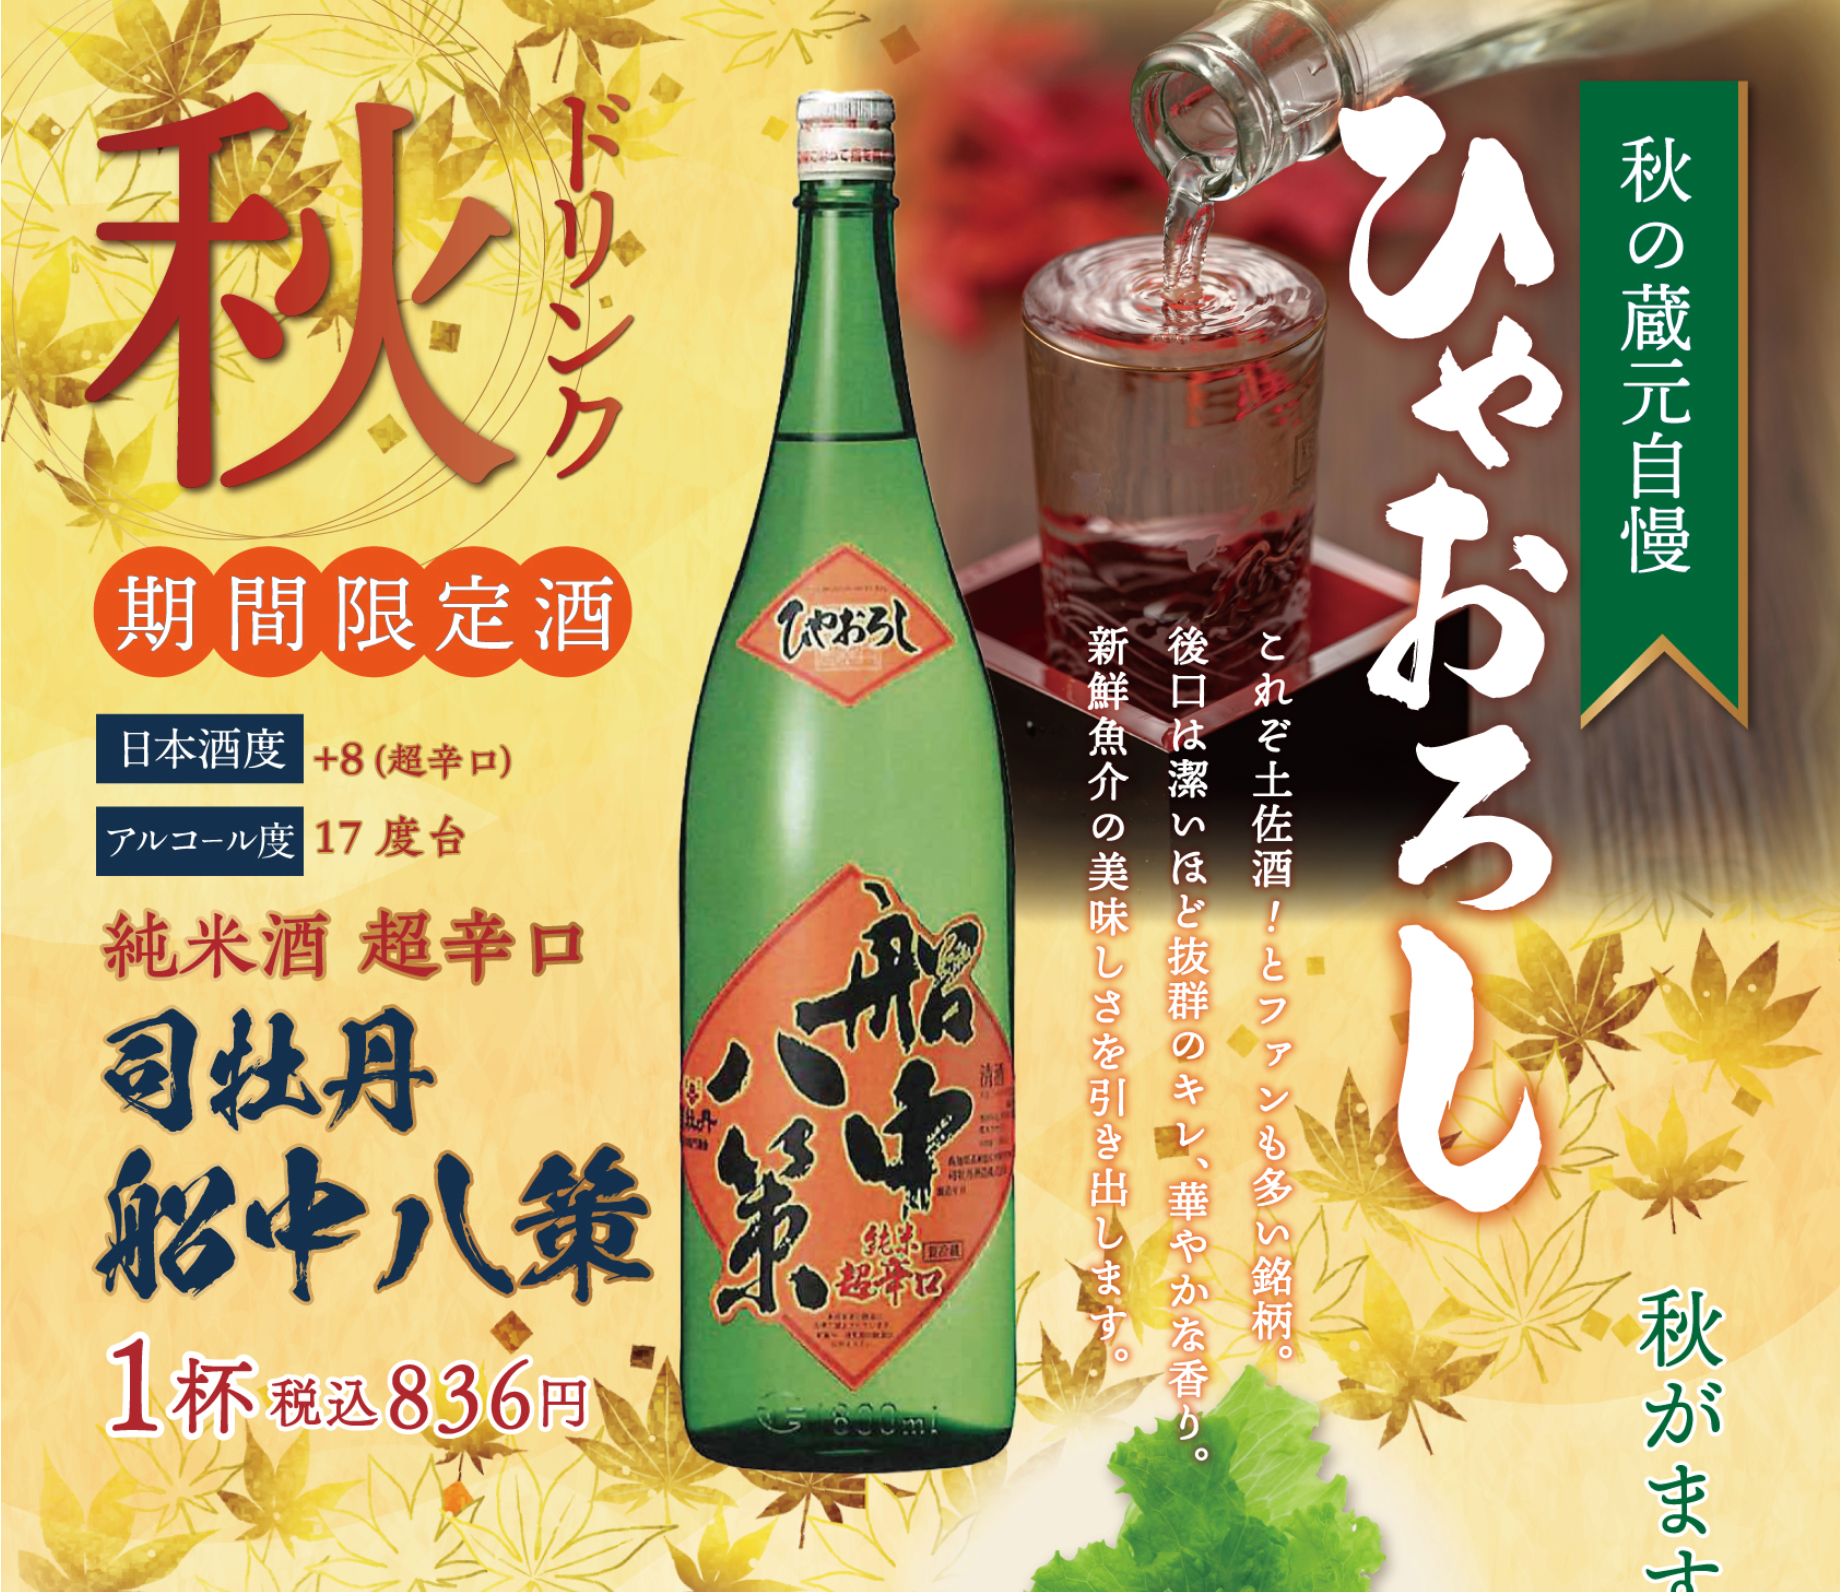 季節限定🌾【終了しました】秋の到来を告げる日本酒🌾ひやおろしが入荷